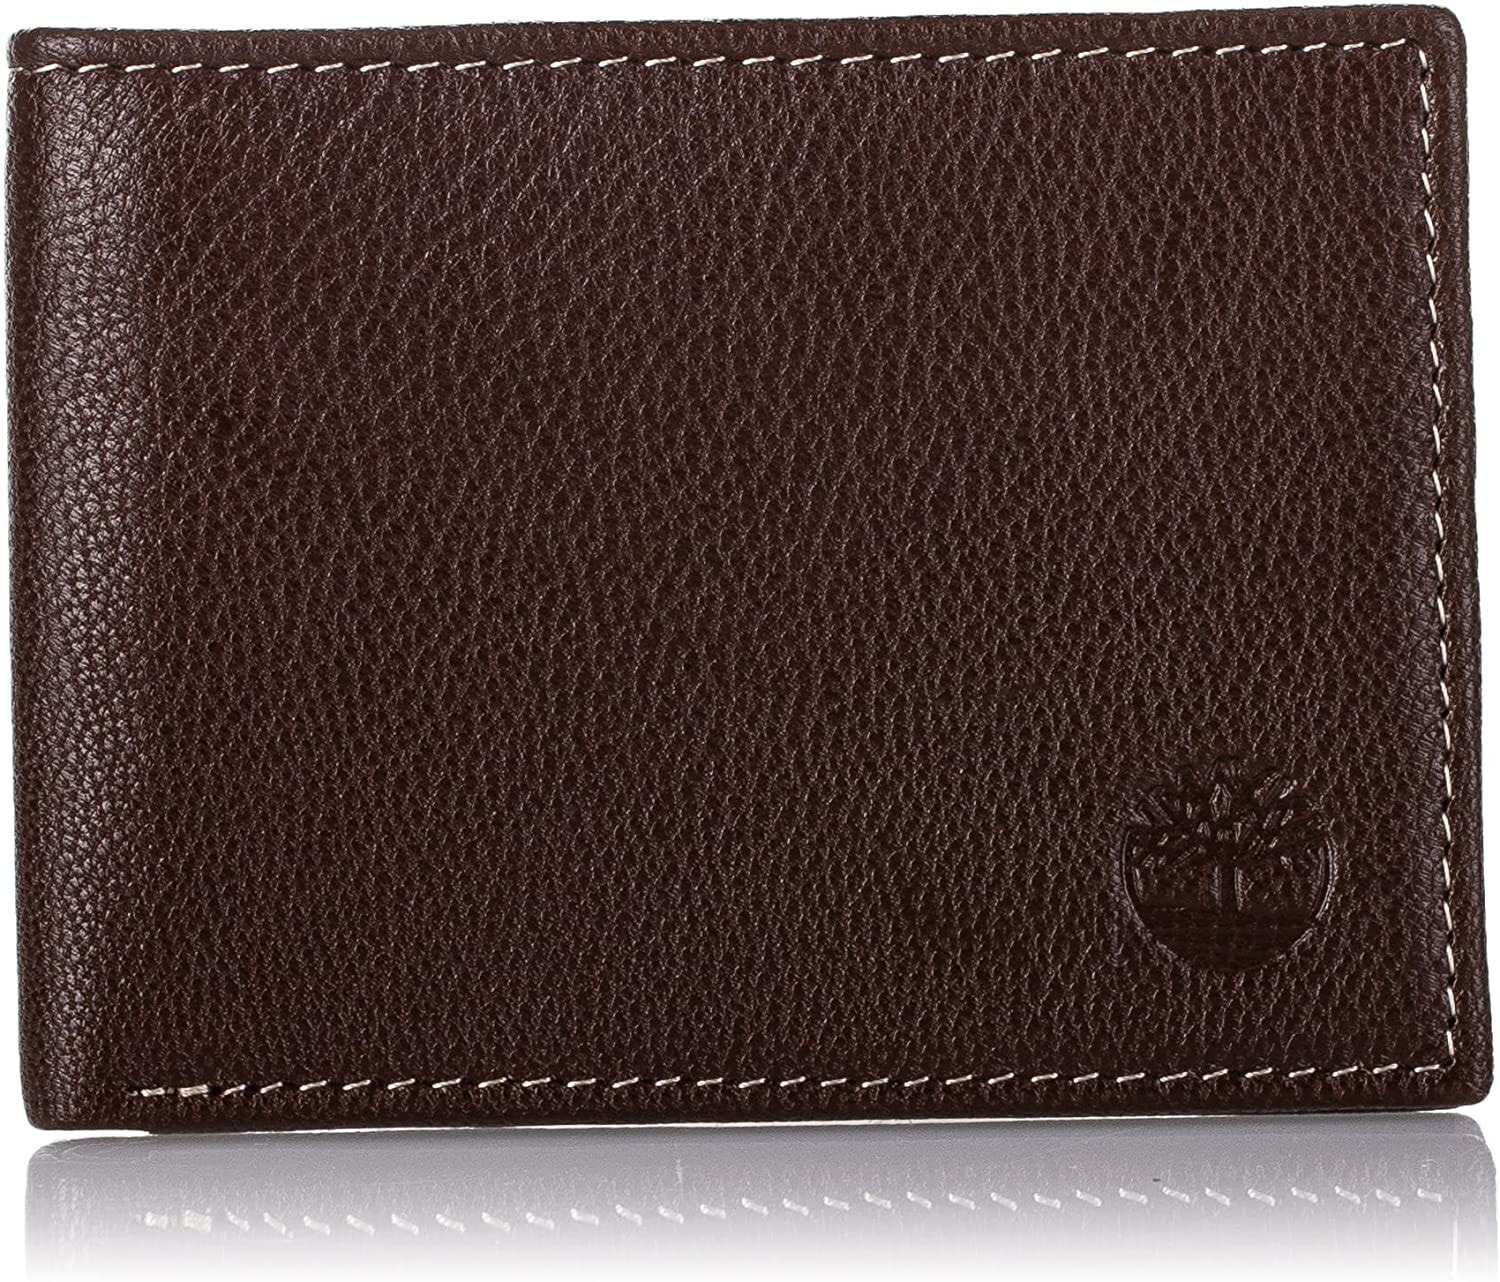 Мужское портмоне кожаное горизонтальное коричневое без застежки Timberland Men's Blix Slimfold Leather Wallet